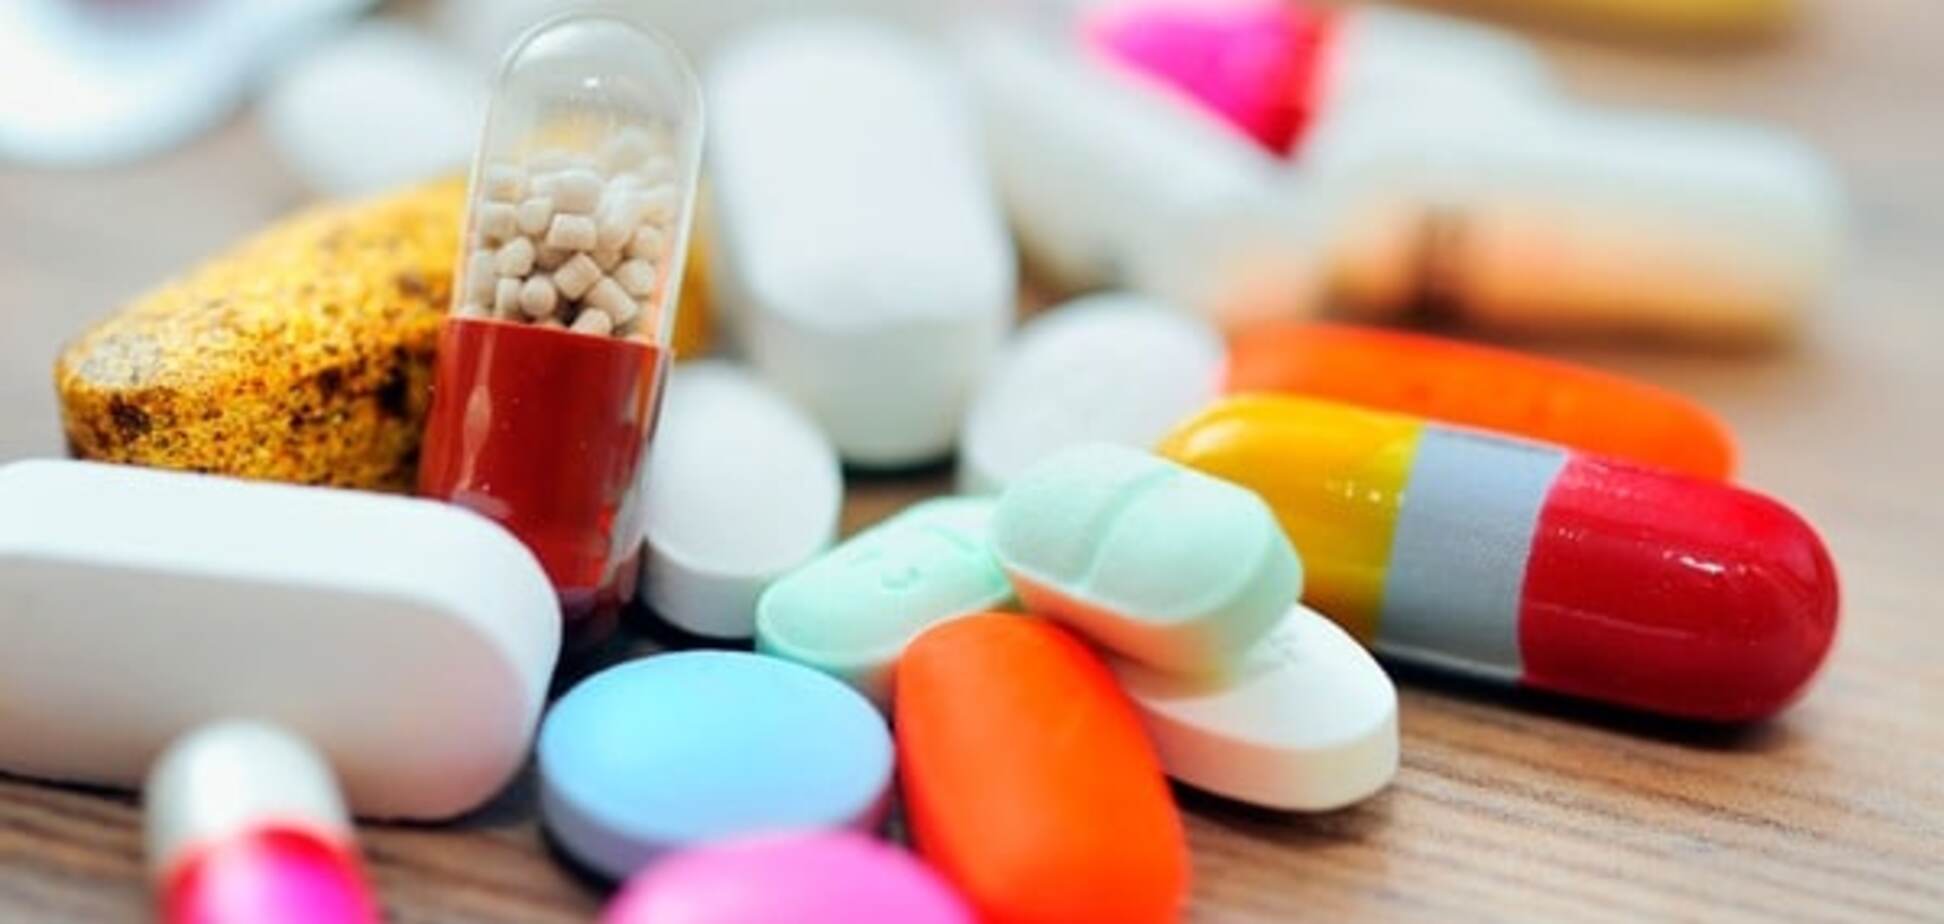 Новая аптечная сеть поможет сдержать рост цен на лекарственные препараты